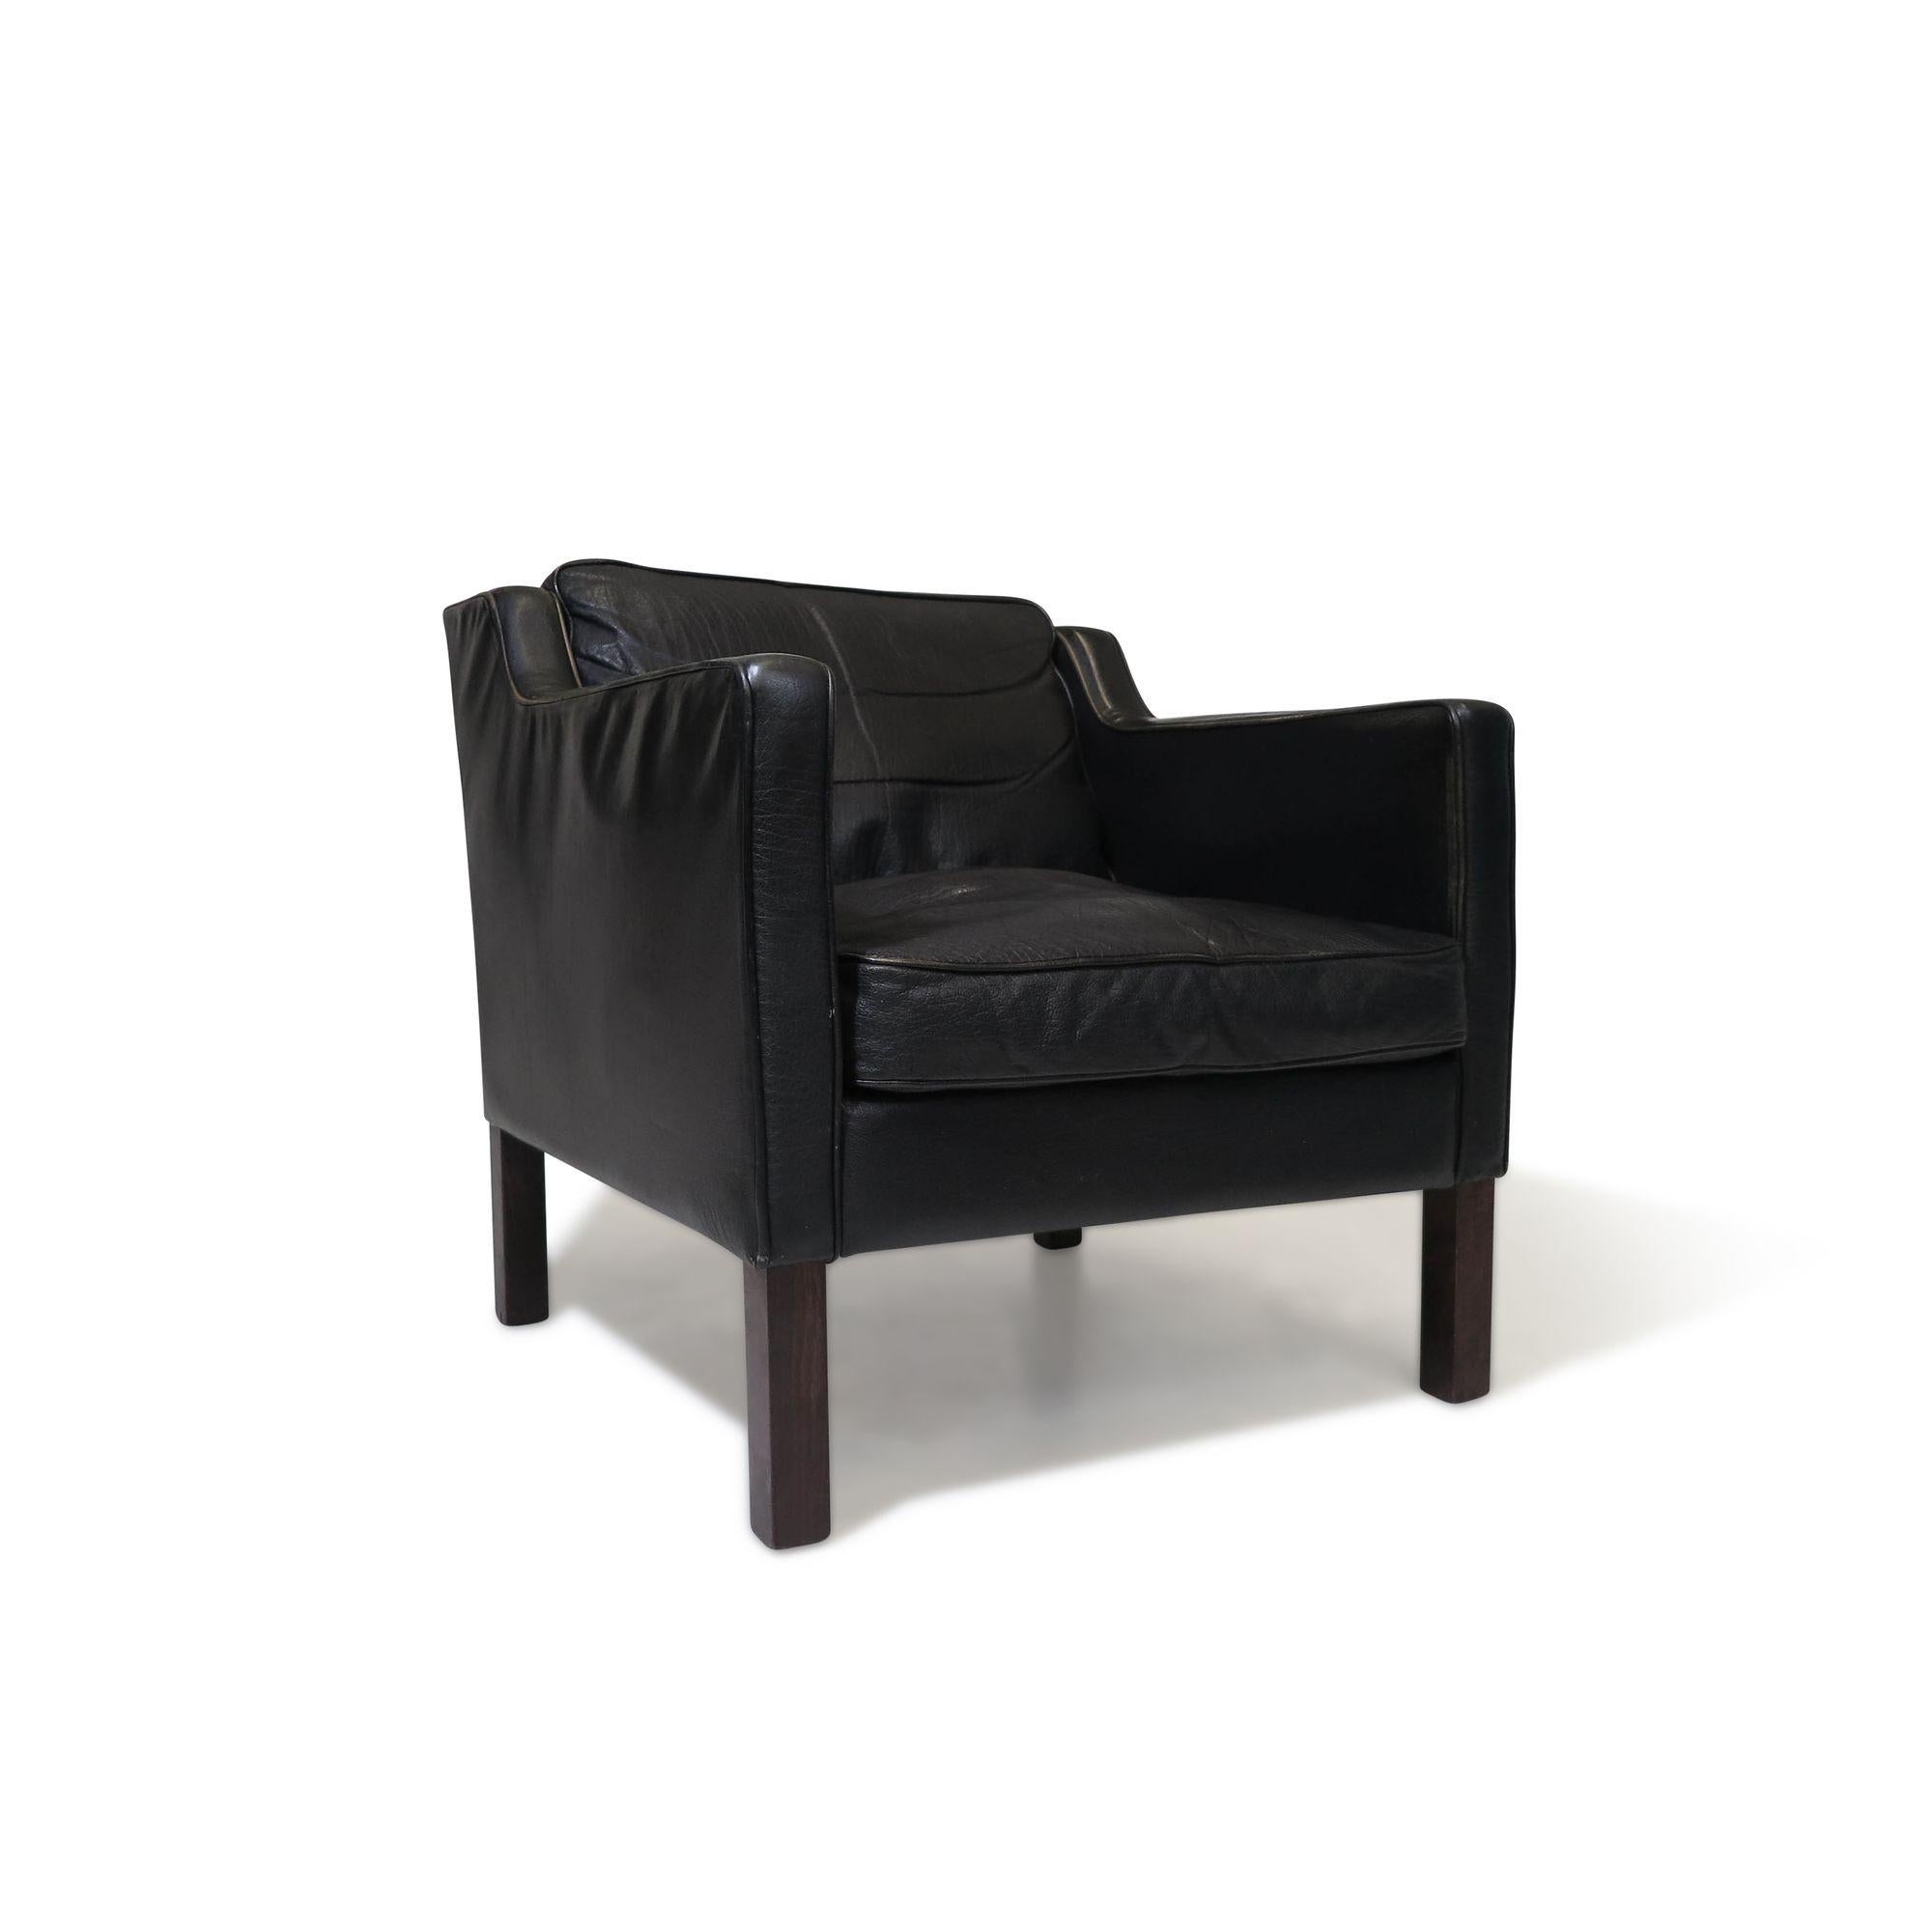 The Modern Scandinavian lounge chair en cuir noir à la manière de Borg.
Forme classique dans ses coussins d'origine en cuir garnis de duvet, reposant sur des pieds carrés.
Mesures
L 28'' x D 28'' x H 28''
Hauteur de l'assise 18''